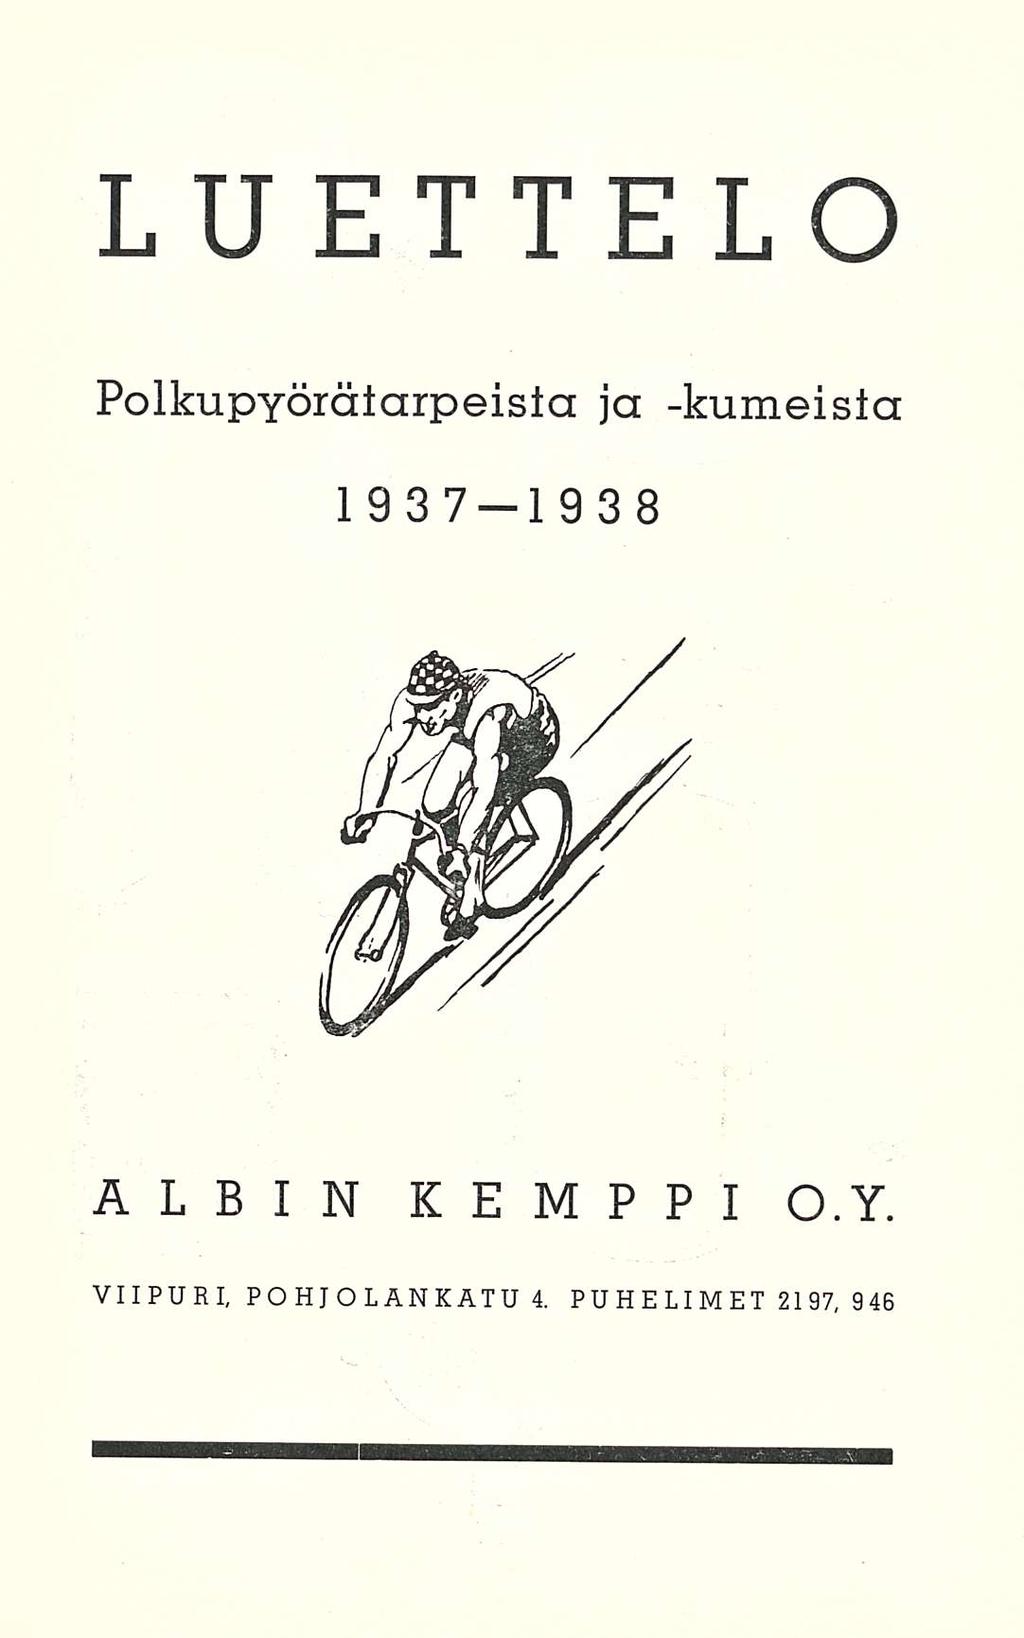 Luettelo polkupyörätarpeisia ja -kumeista 1937-1938